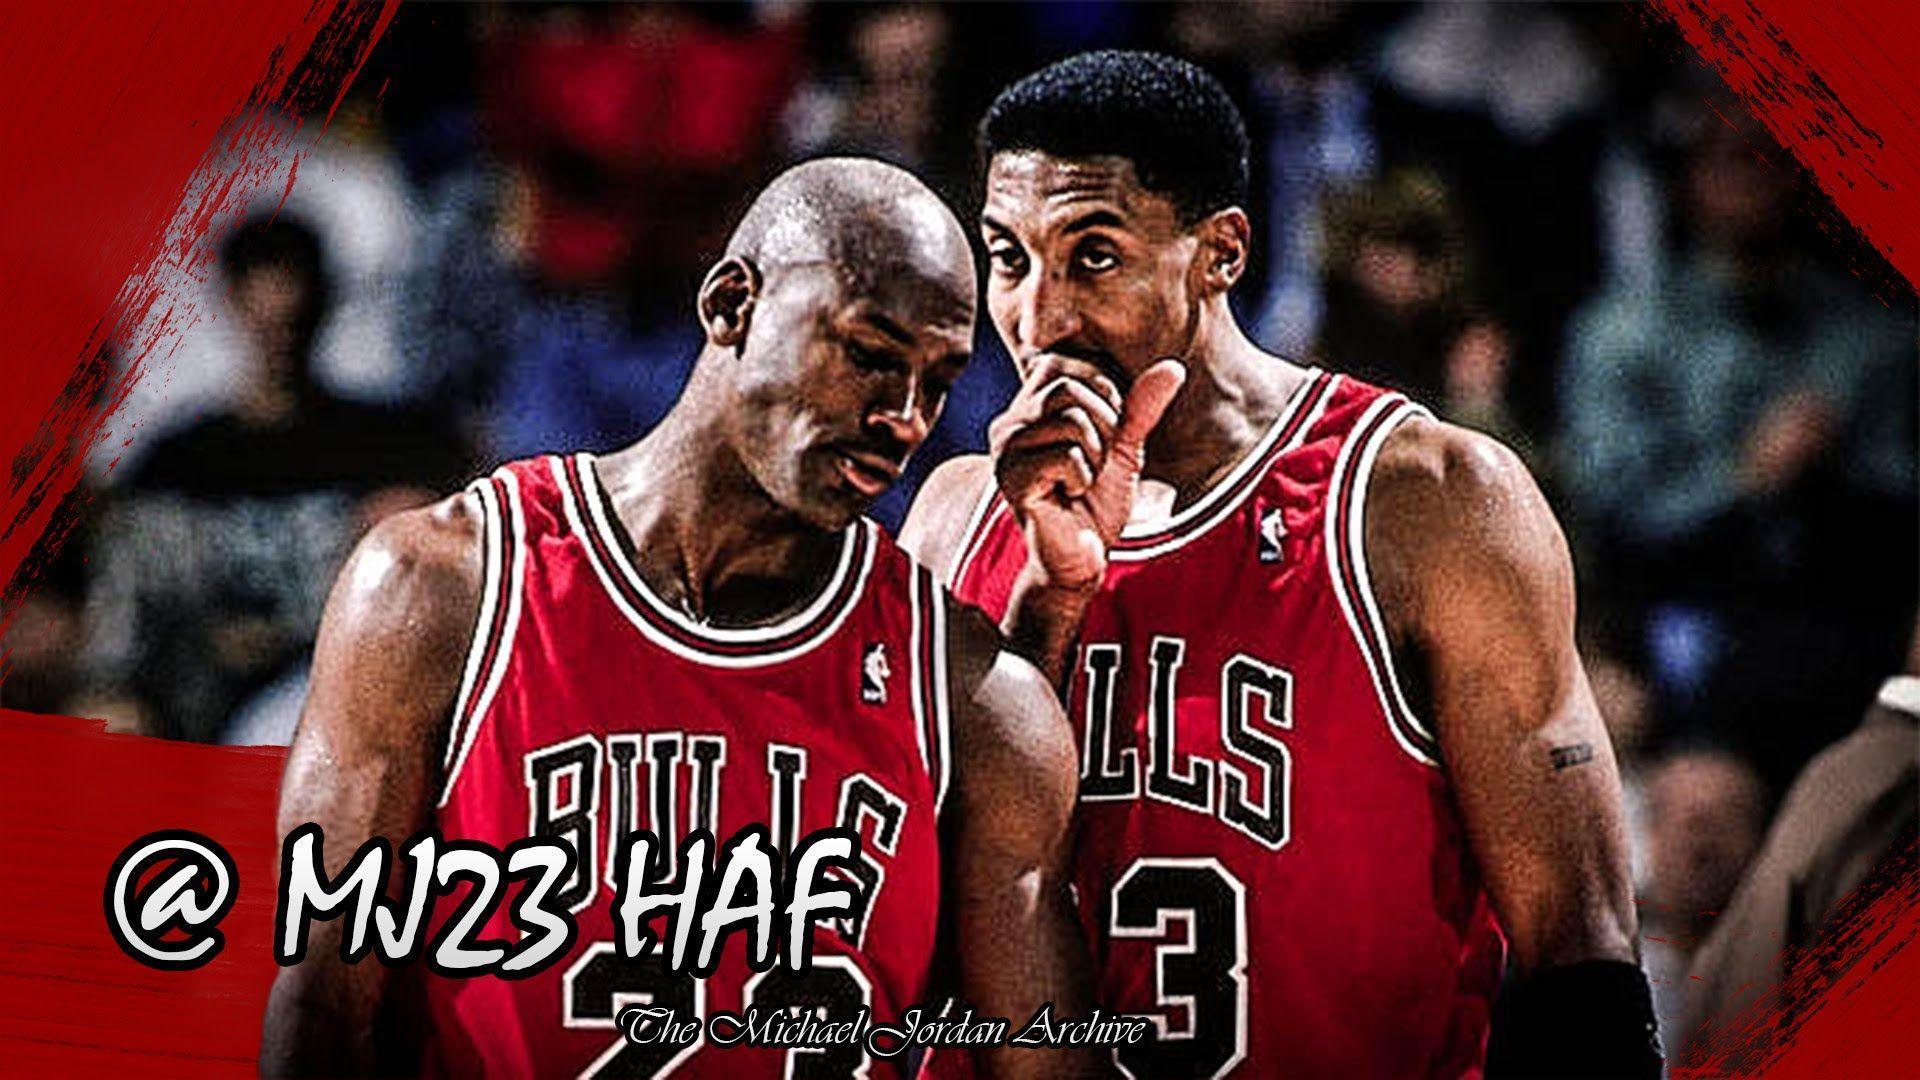 Michael Jordan & Scottie Pippen Highlights vs Celtics 1995.12.18